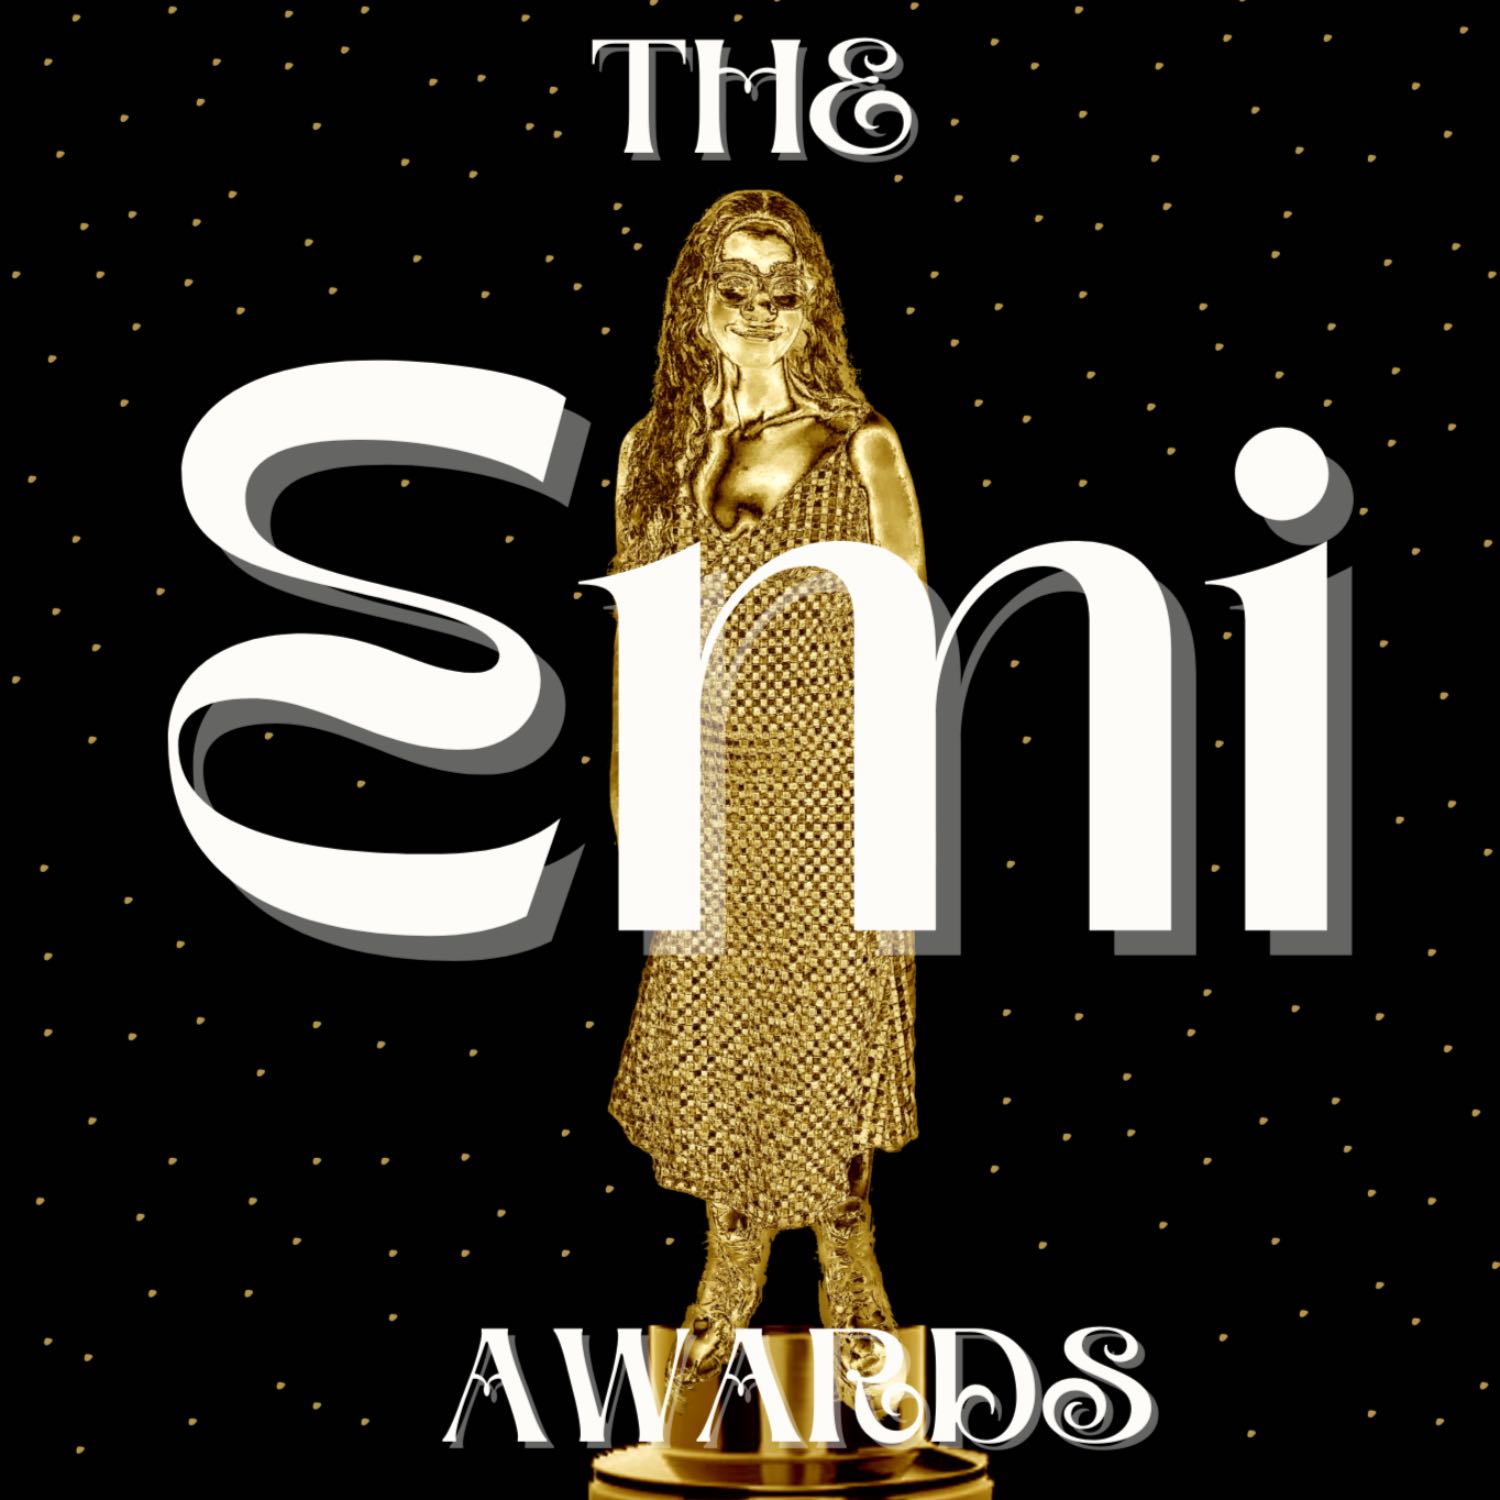 The Emi Awards